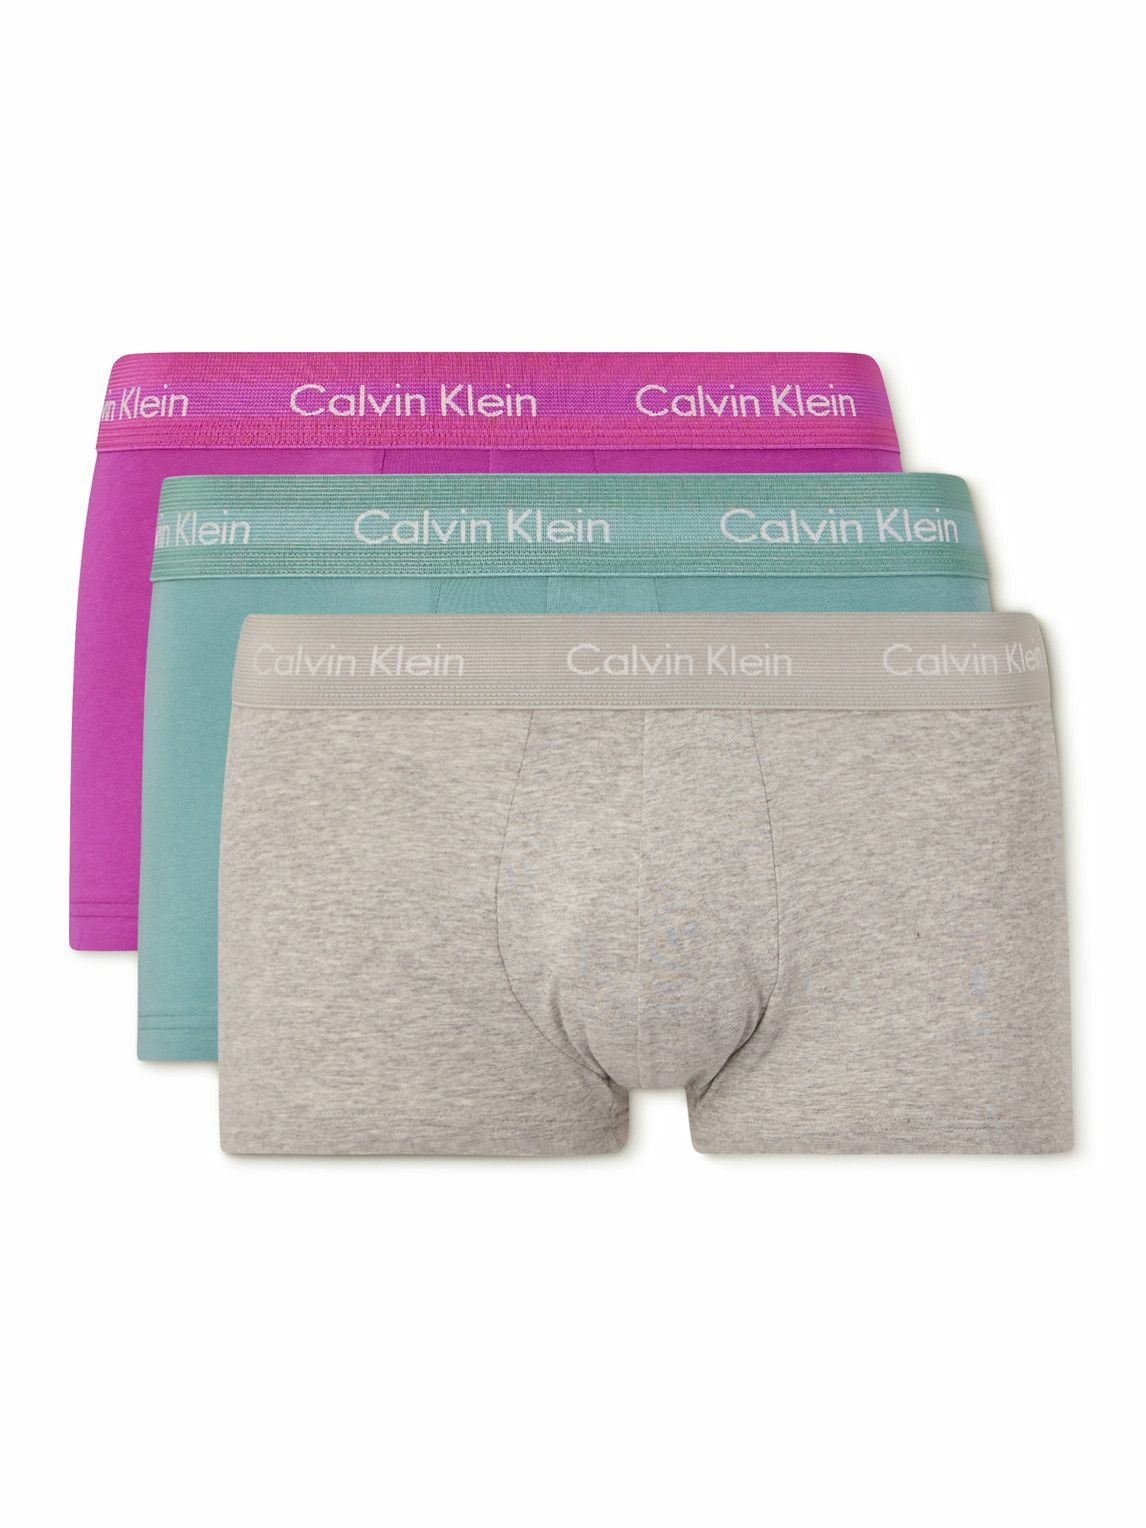 Calvin Klein Underwear: Three-Pack White Boxers